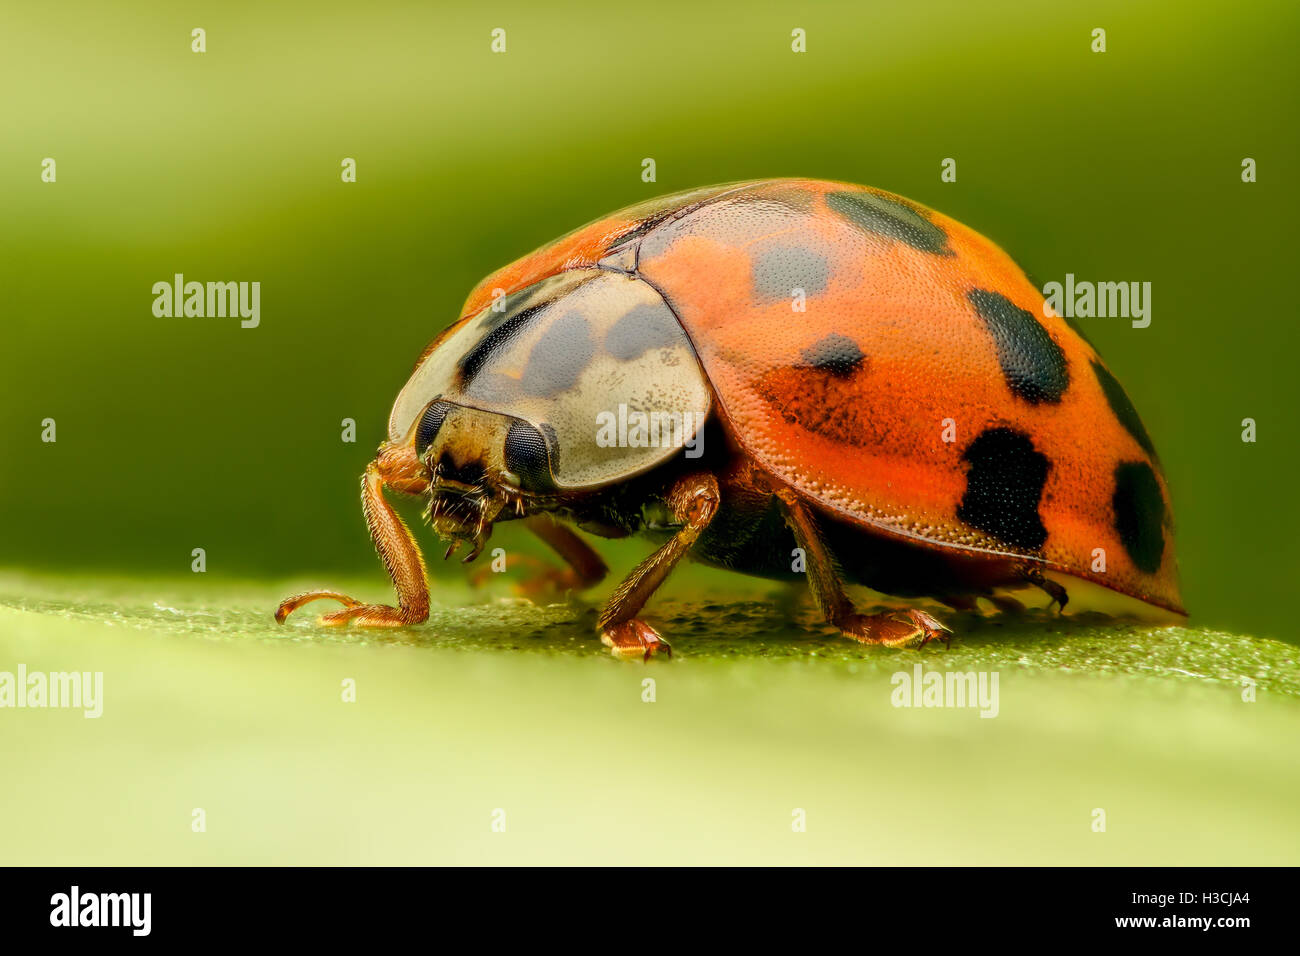 Ladybug extreme closeup Stock Photo